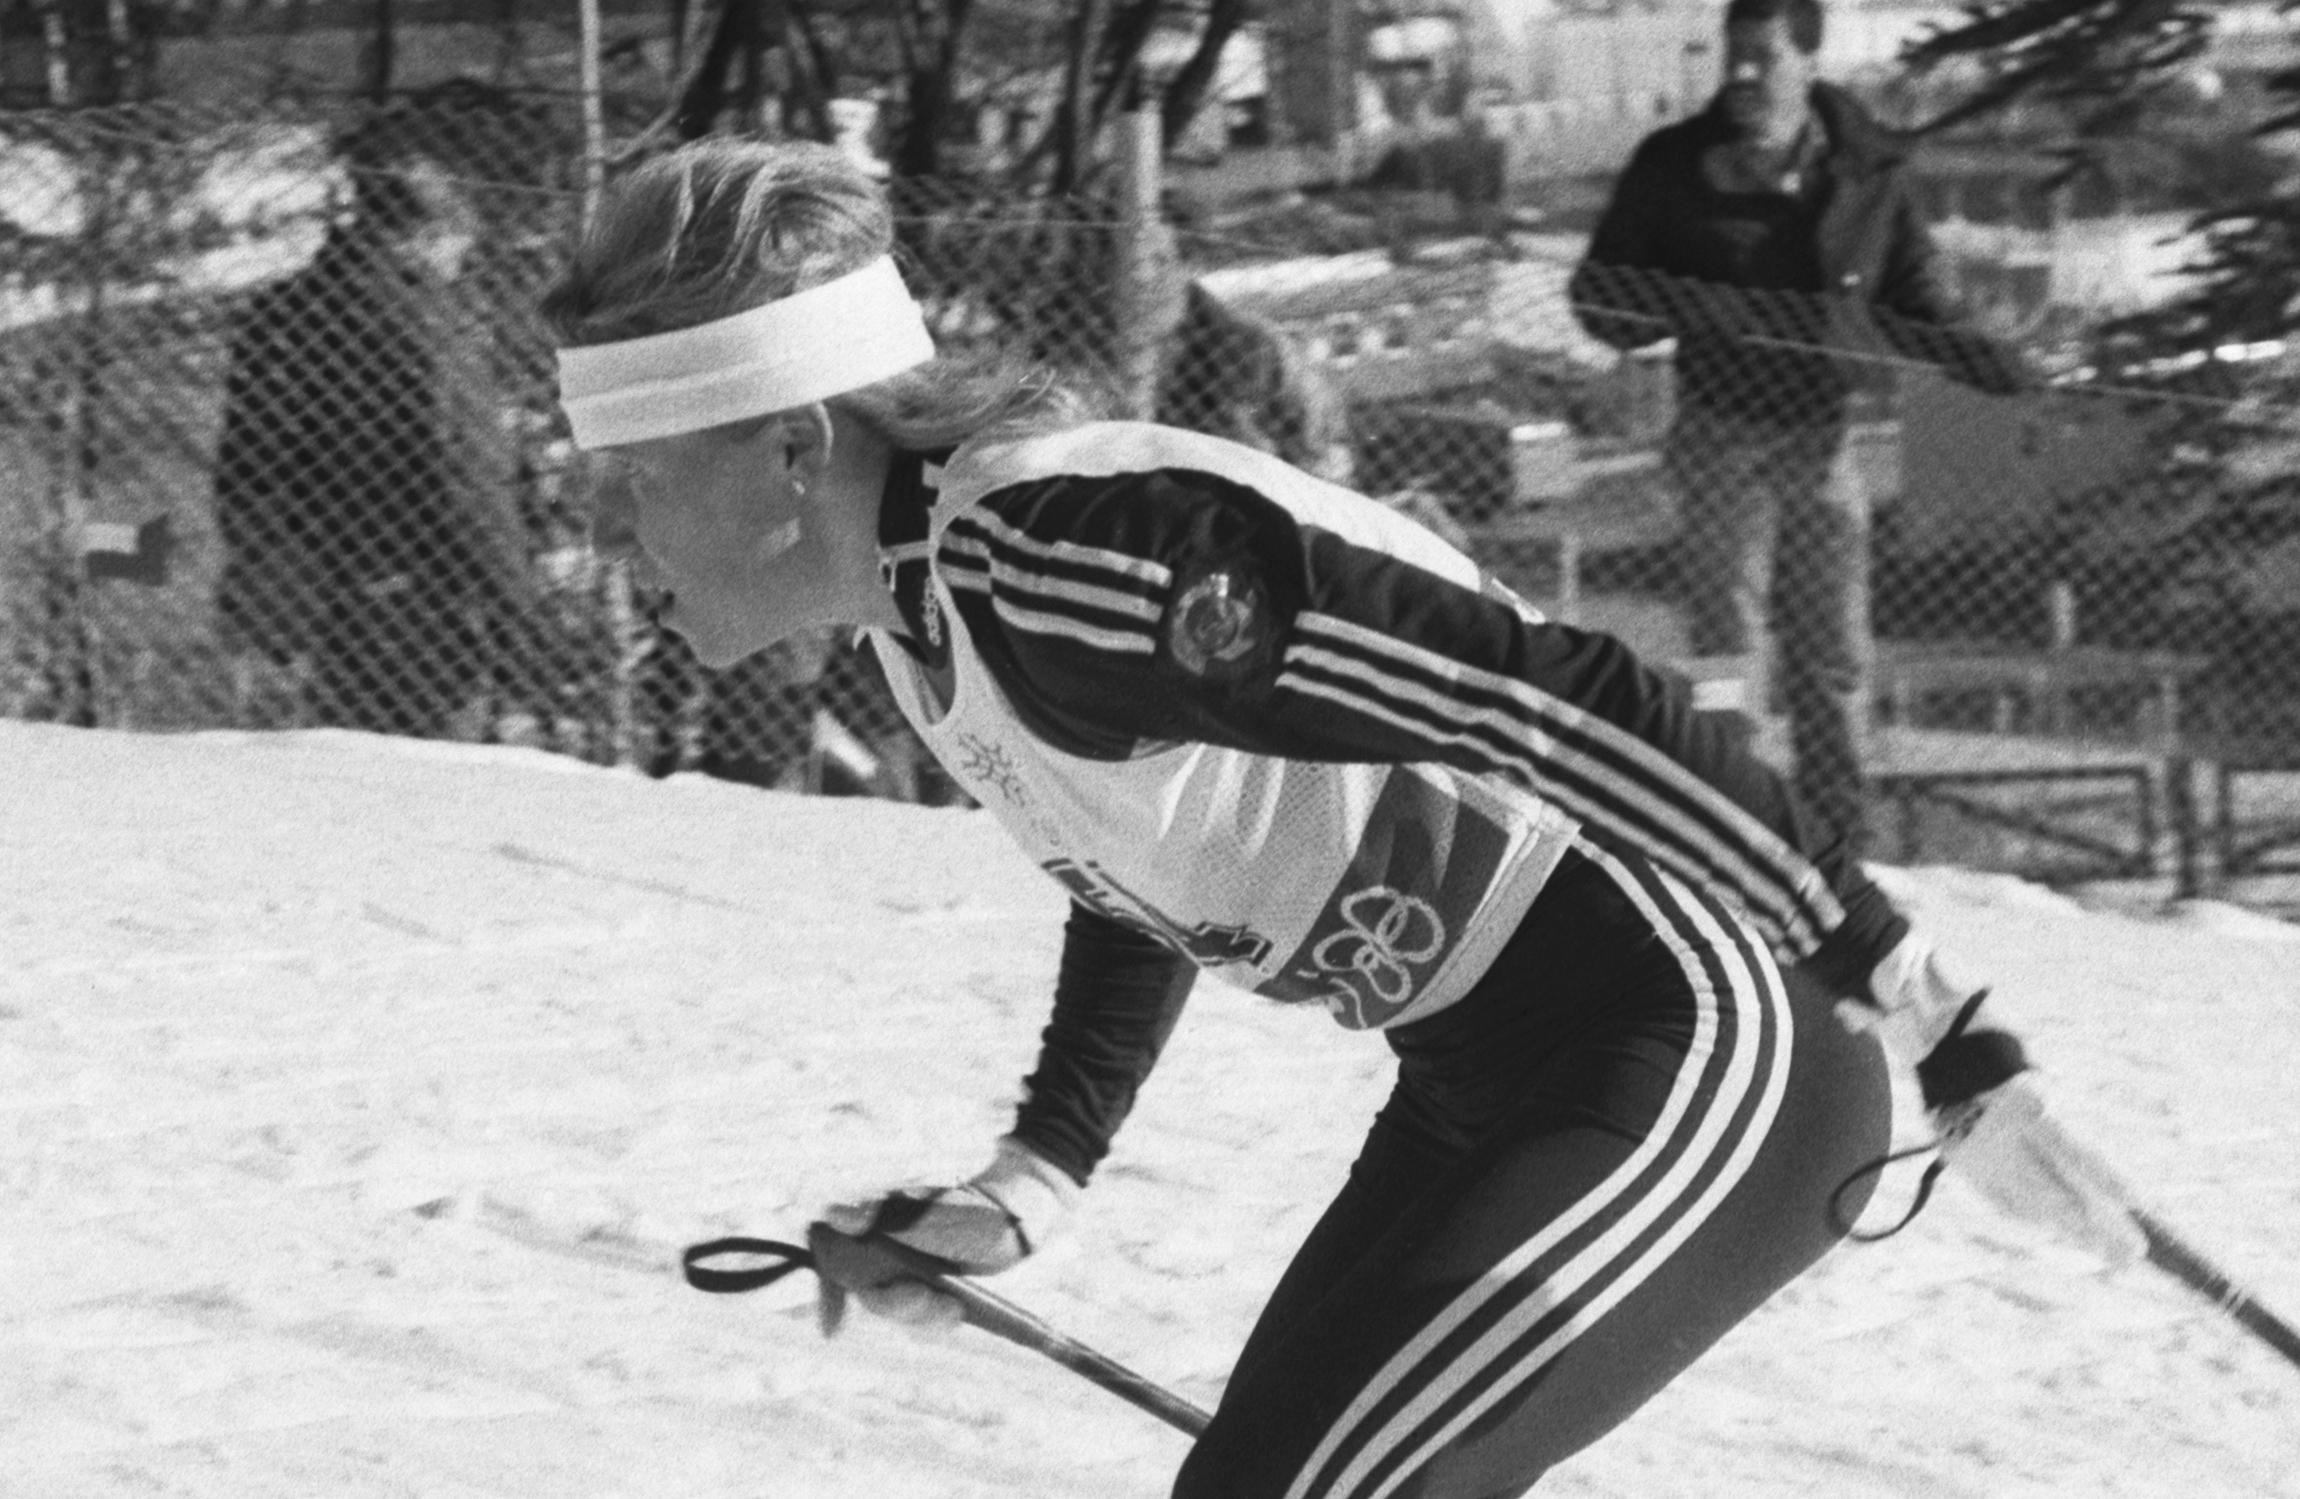 До 2018 года Резцова сохраняла титул единственной в мире женщины&nbsp;&mdash; олимпийской чемпионки сразу в двух зимних видах спорта (лыжные гонки и биатлон).

На фото: 25 февраля 1988&nbsp;года. Калгари. XV зимние Олимпийские игры. Резцова на дистанции в лыжной гонке на 20&nbsp;км.